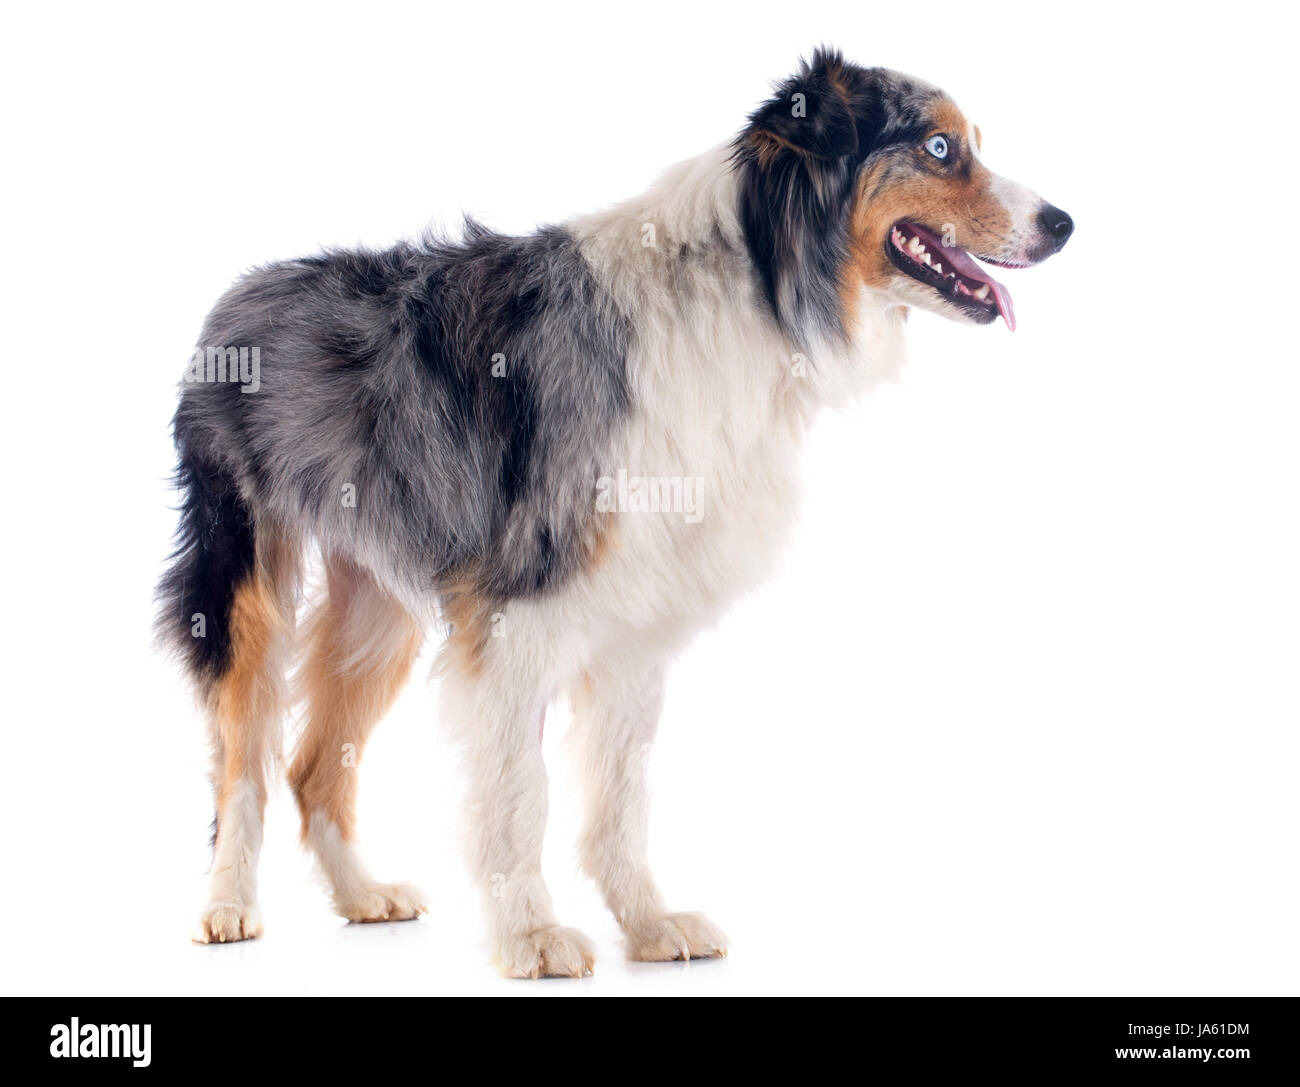 Hund, blau, Augen, Studio, Welpen, eins, Hundeartige, erfreut, ehrgeizig, Stockfoto